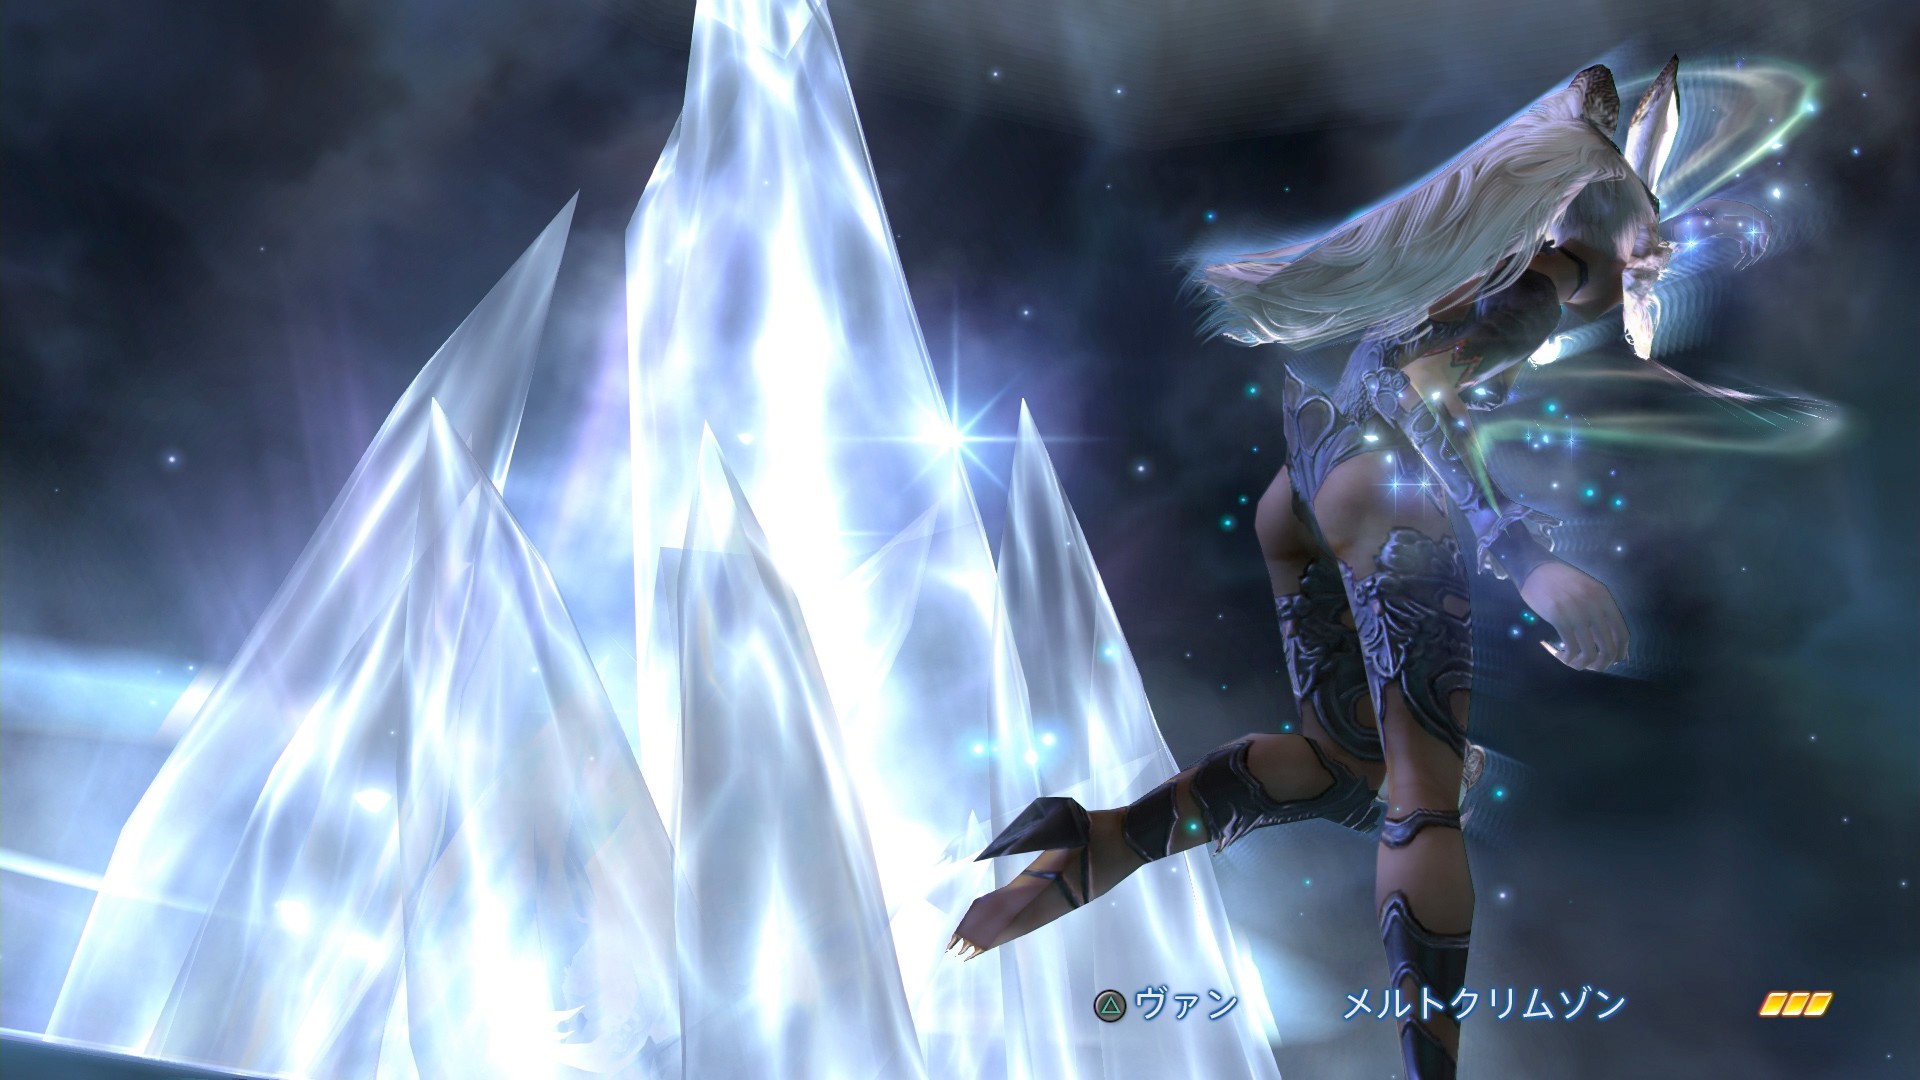 画像集no 031 Final Fantasy Xii The Zodiac Age のやり込み要素モブハントや